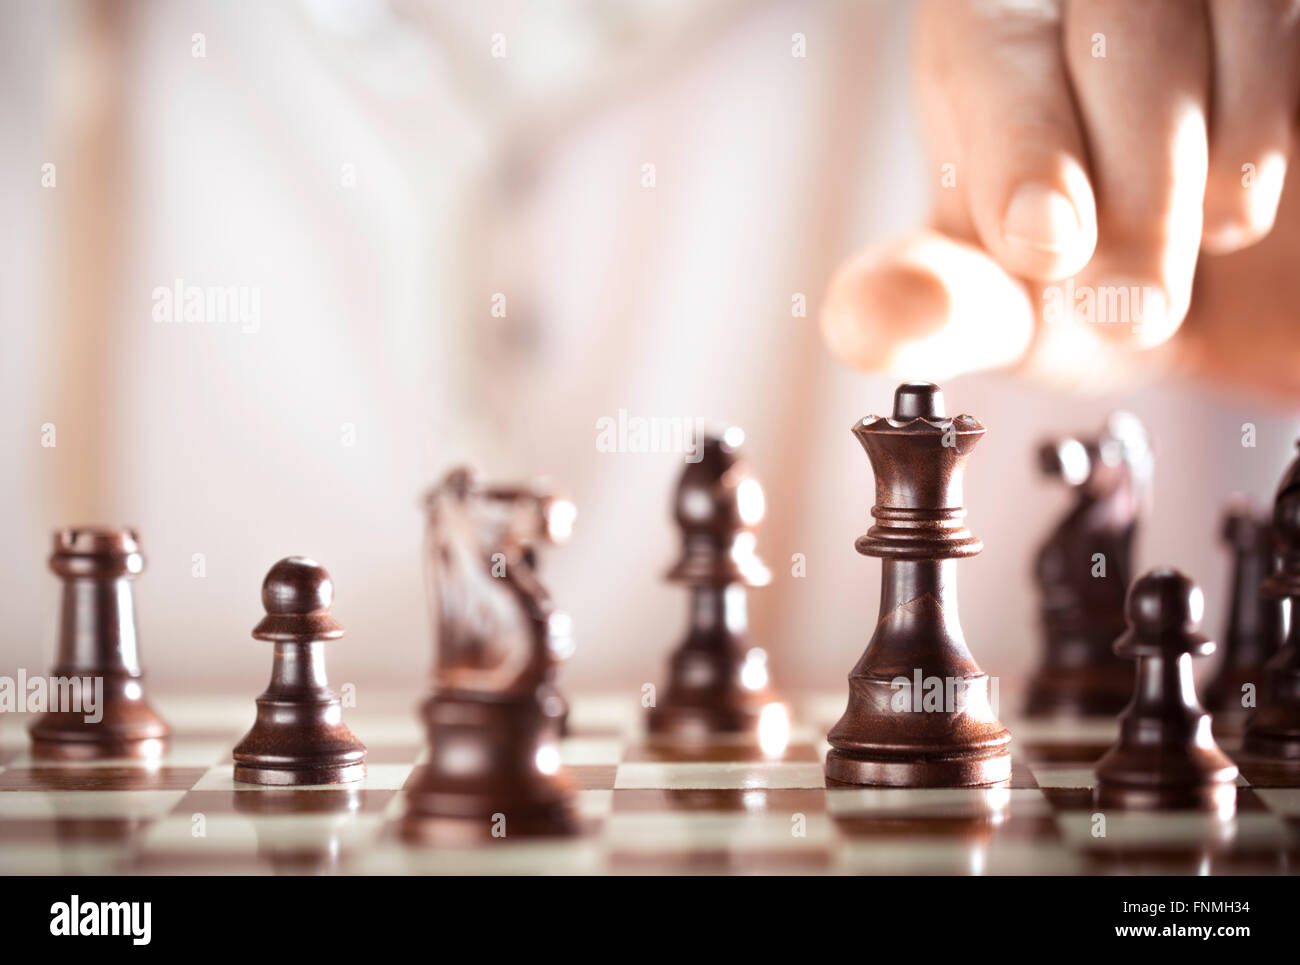 Juego de tablero de ajedrez, acerca de la mano del jugador para jugar, concepto de excelencia. Foto de stock